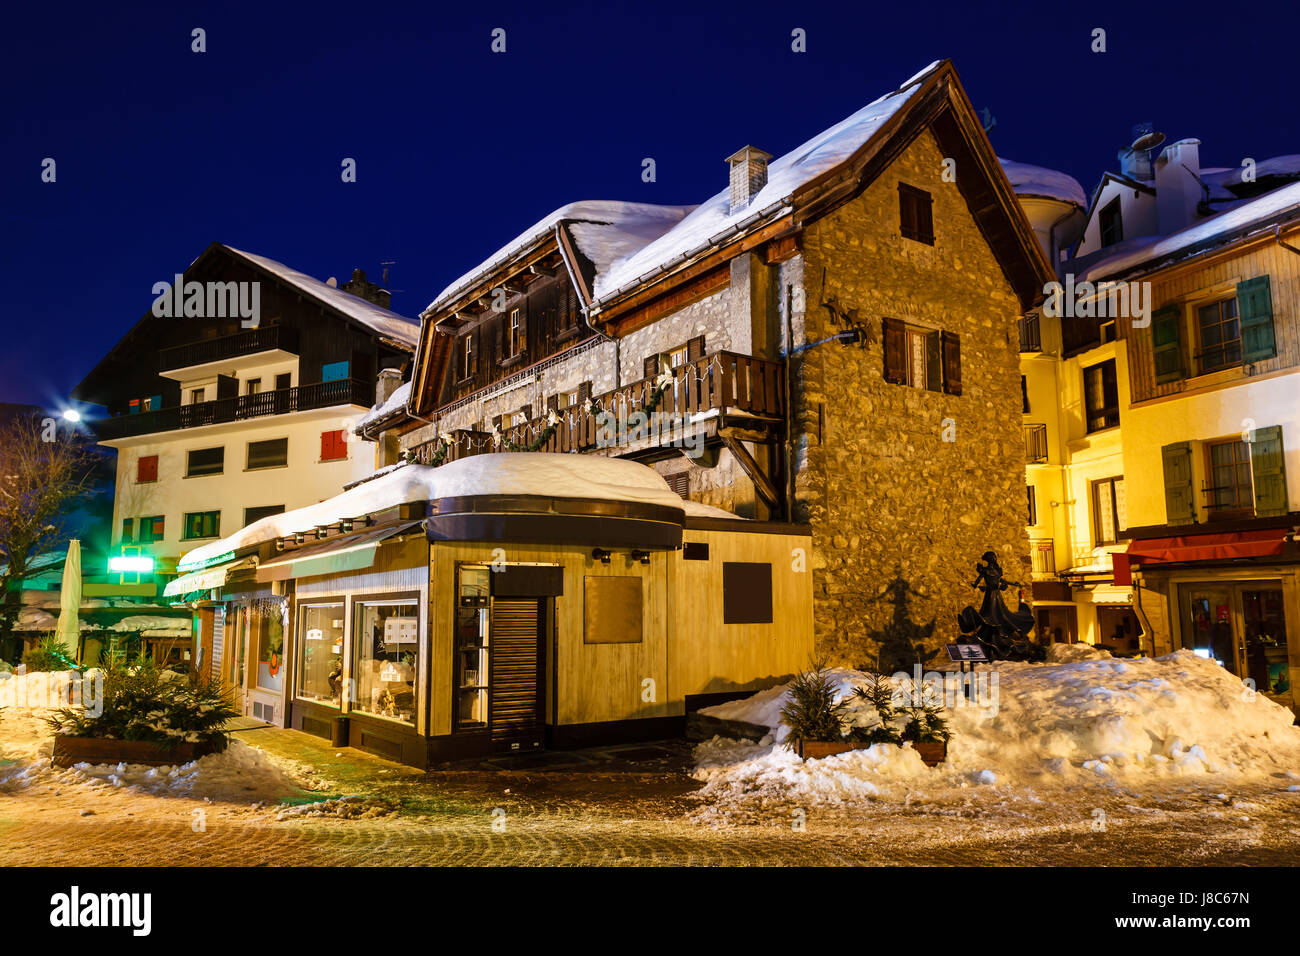 Beleuchtete Straße von Megève auf Weihnachten Nacht, Französische Alpen, Frankreich Stockfoto